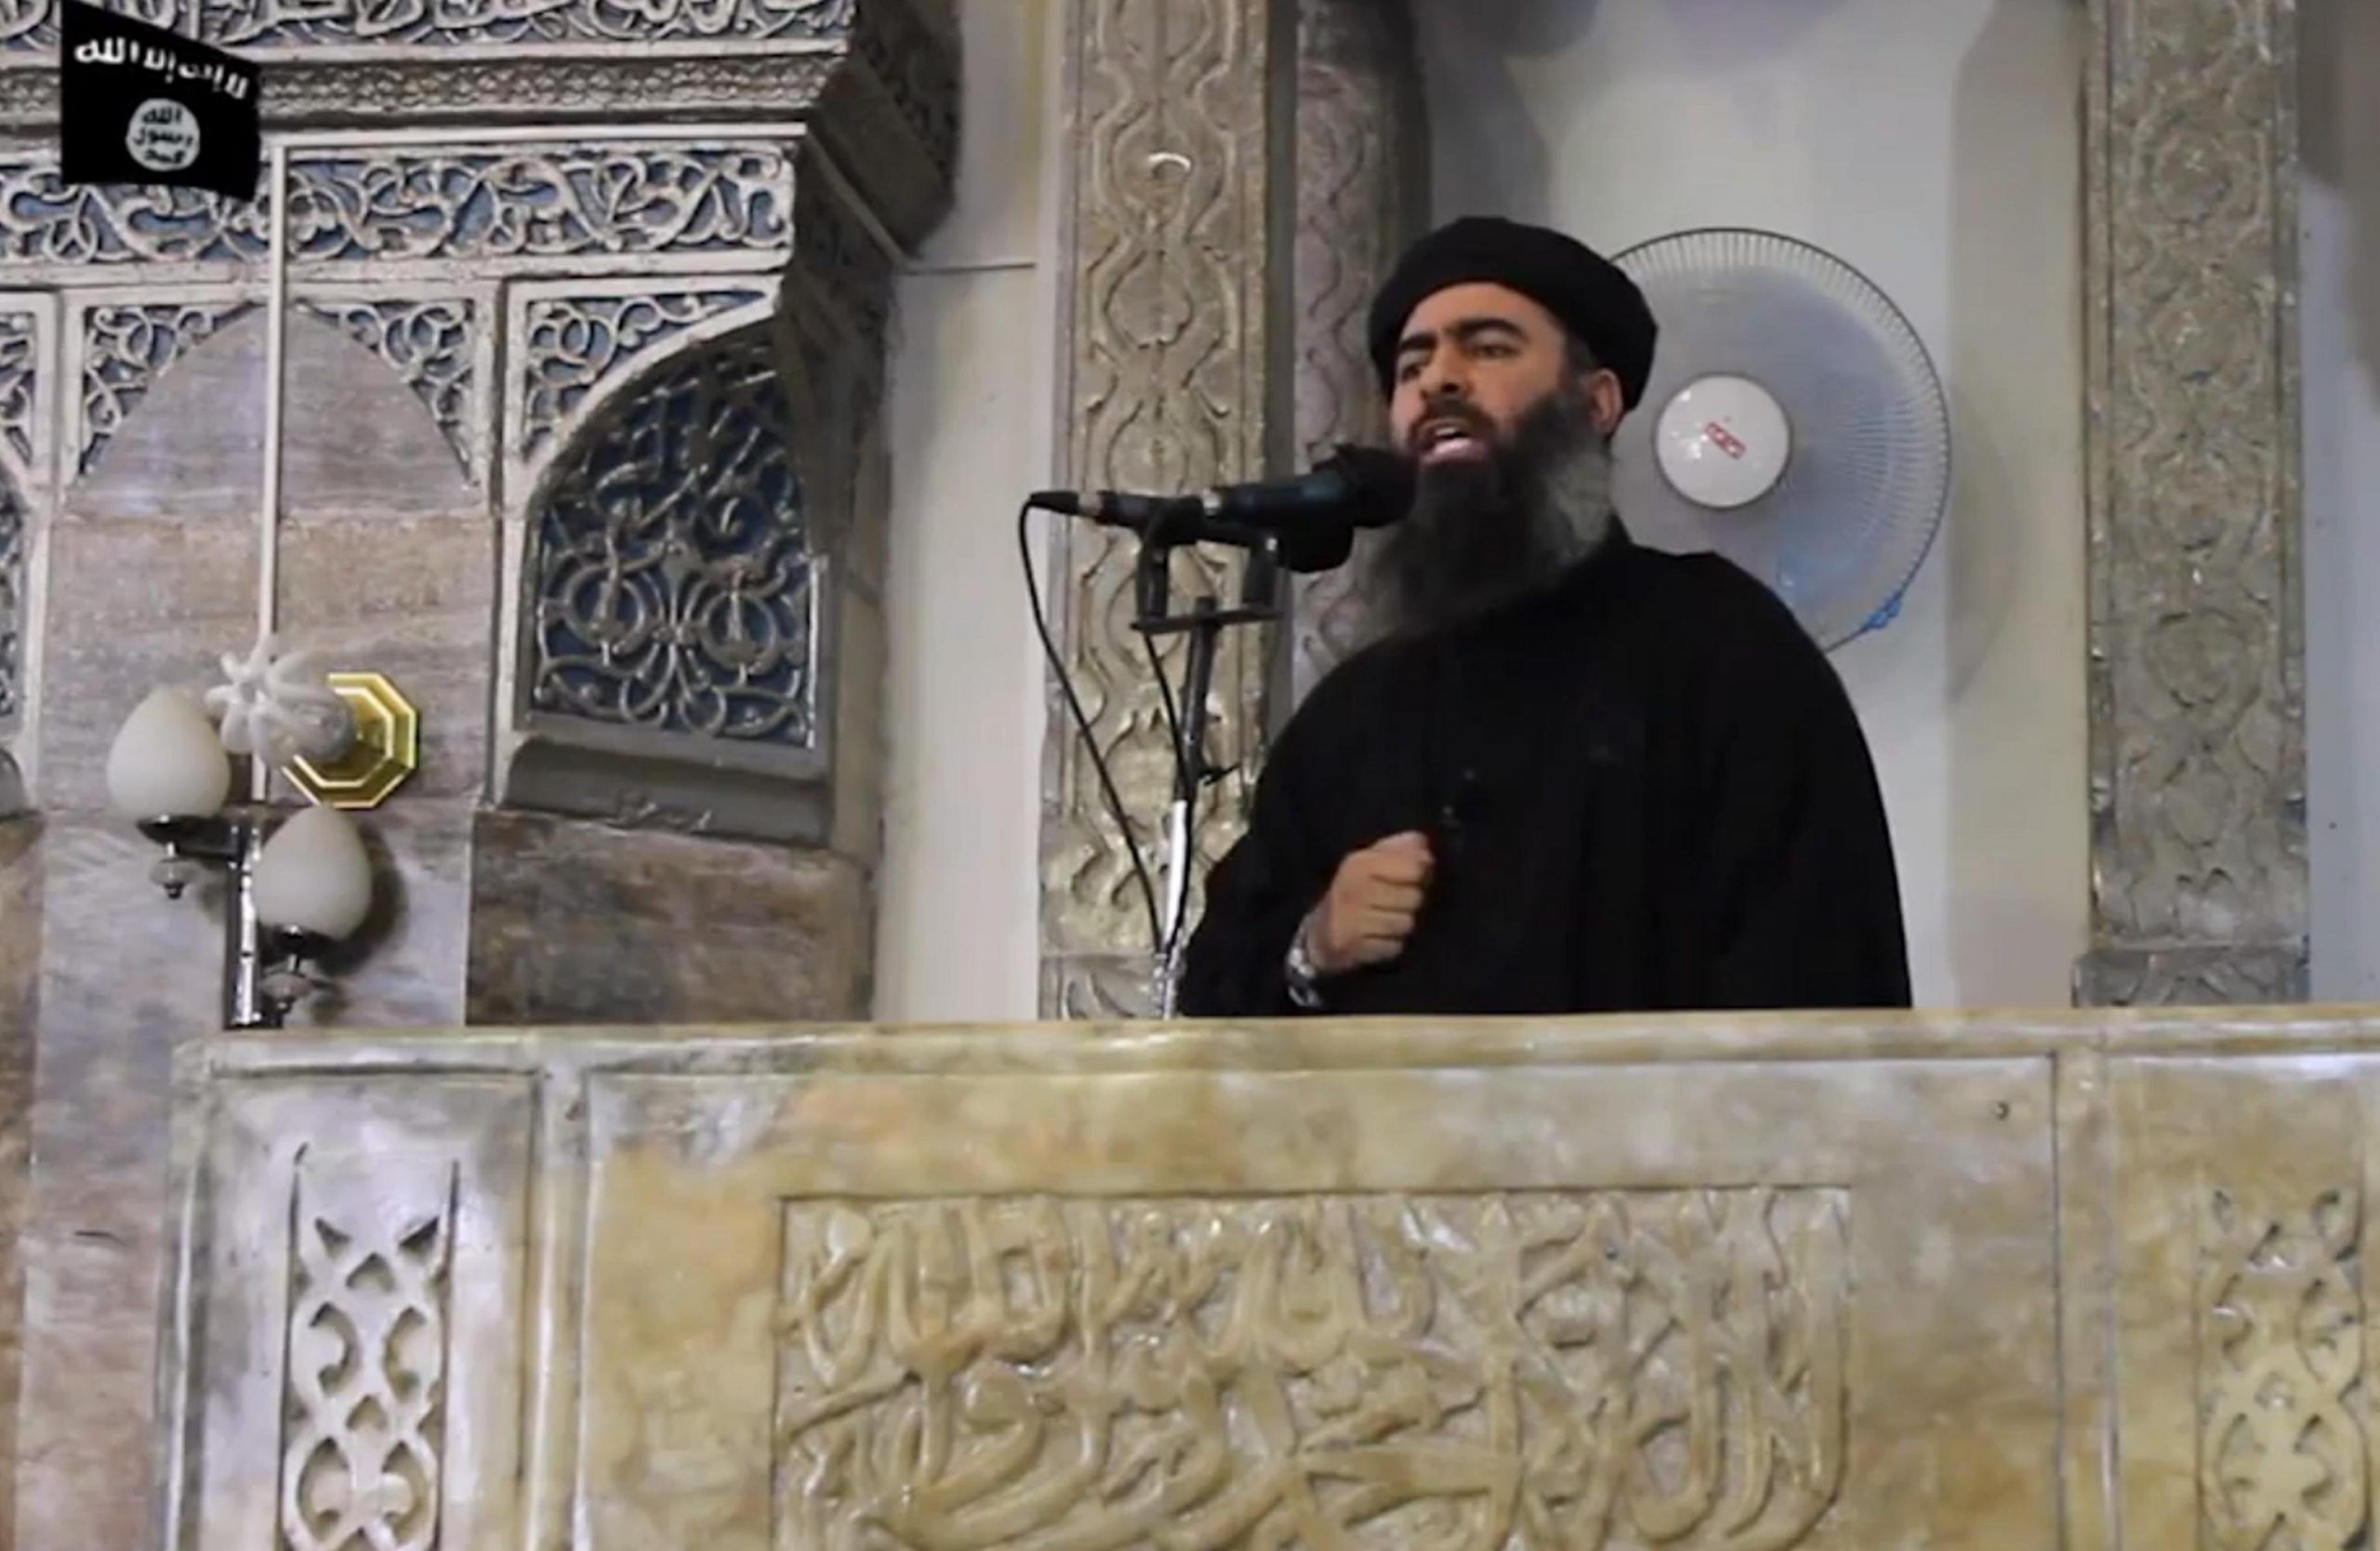 Guerra all’Isis, confermata la morte di al-Baghdadi: ‘Atteso il comunicato ufficiale’